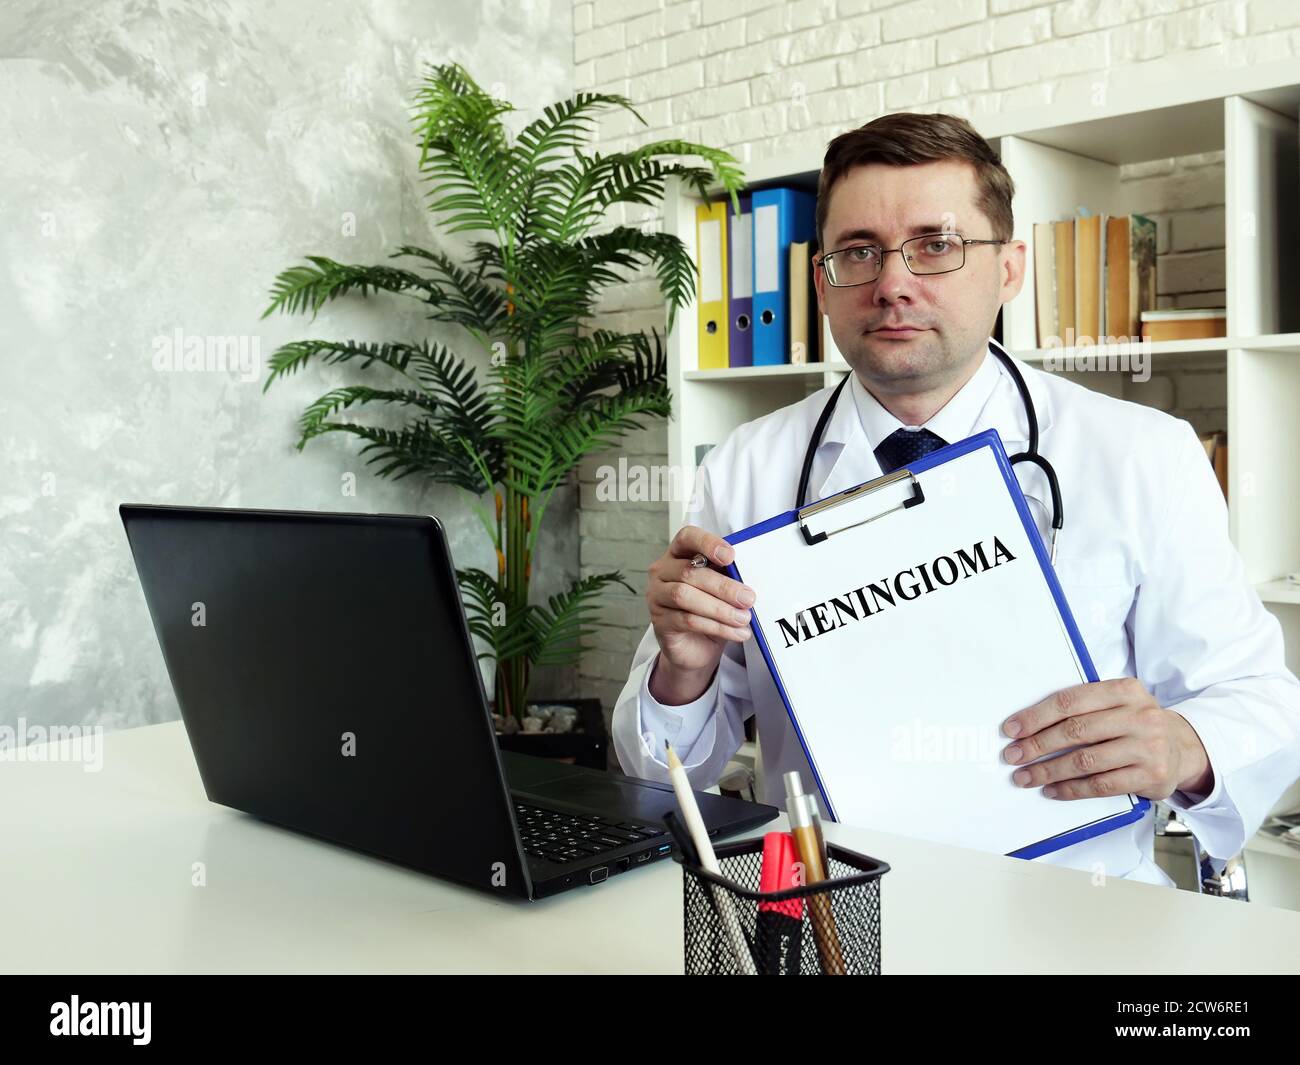 Concetto di meningioma. Il medico tiene una diagnosi nelle sue mani. Foto Stock